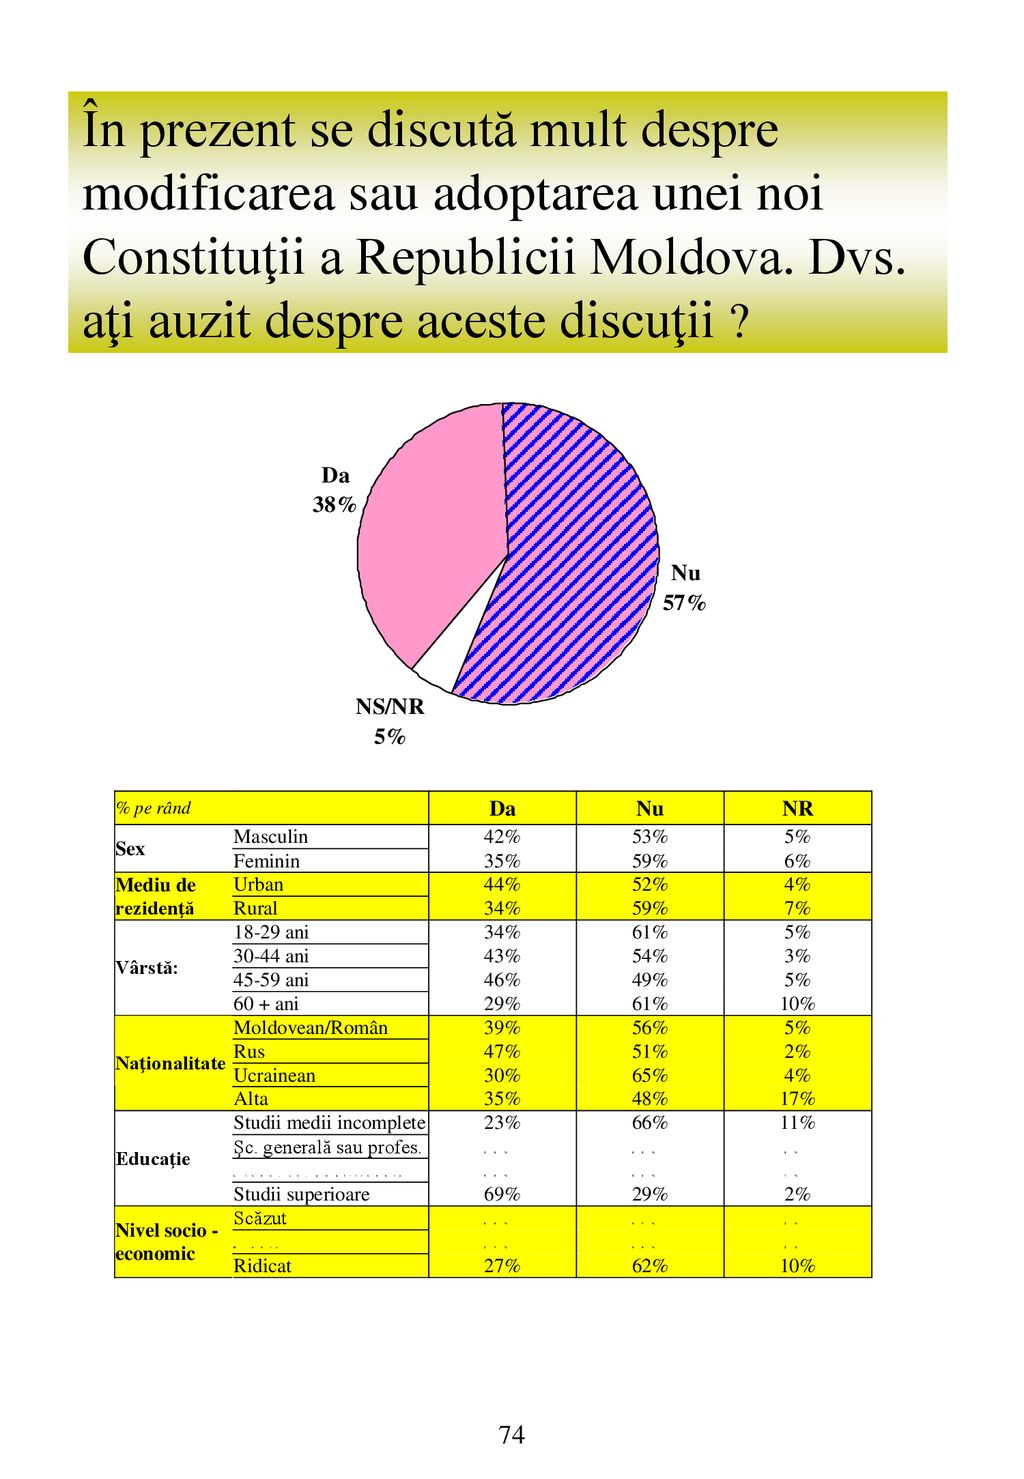 În prezent se discută mult despre modificarea sau adoptarea unei noi Constituţii a Republicii Moldova.